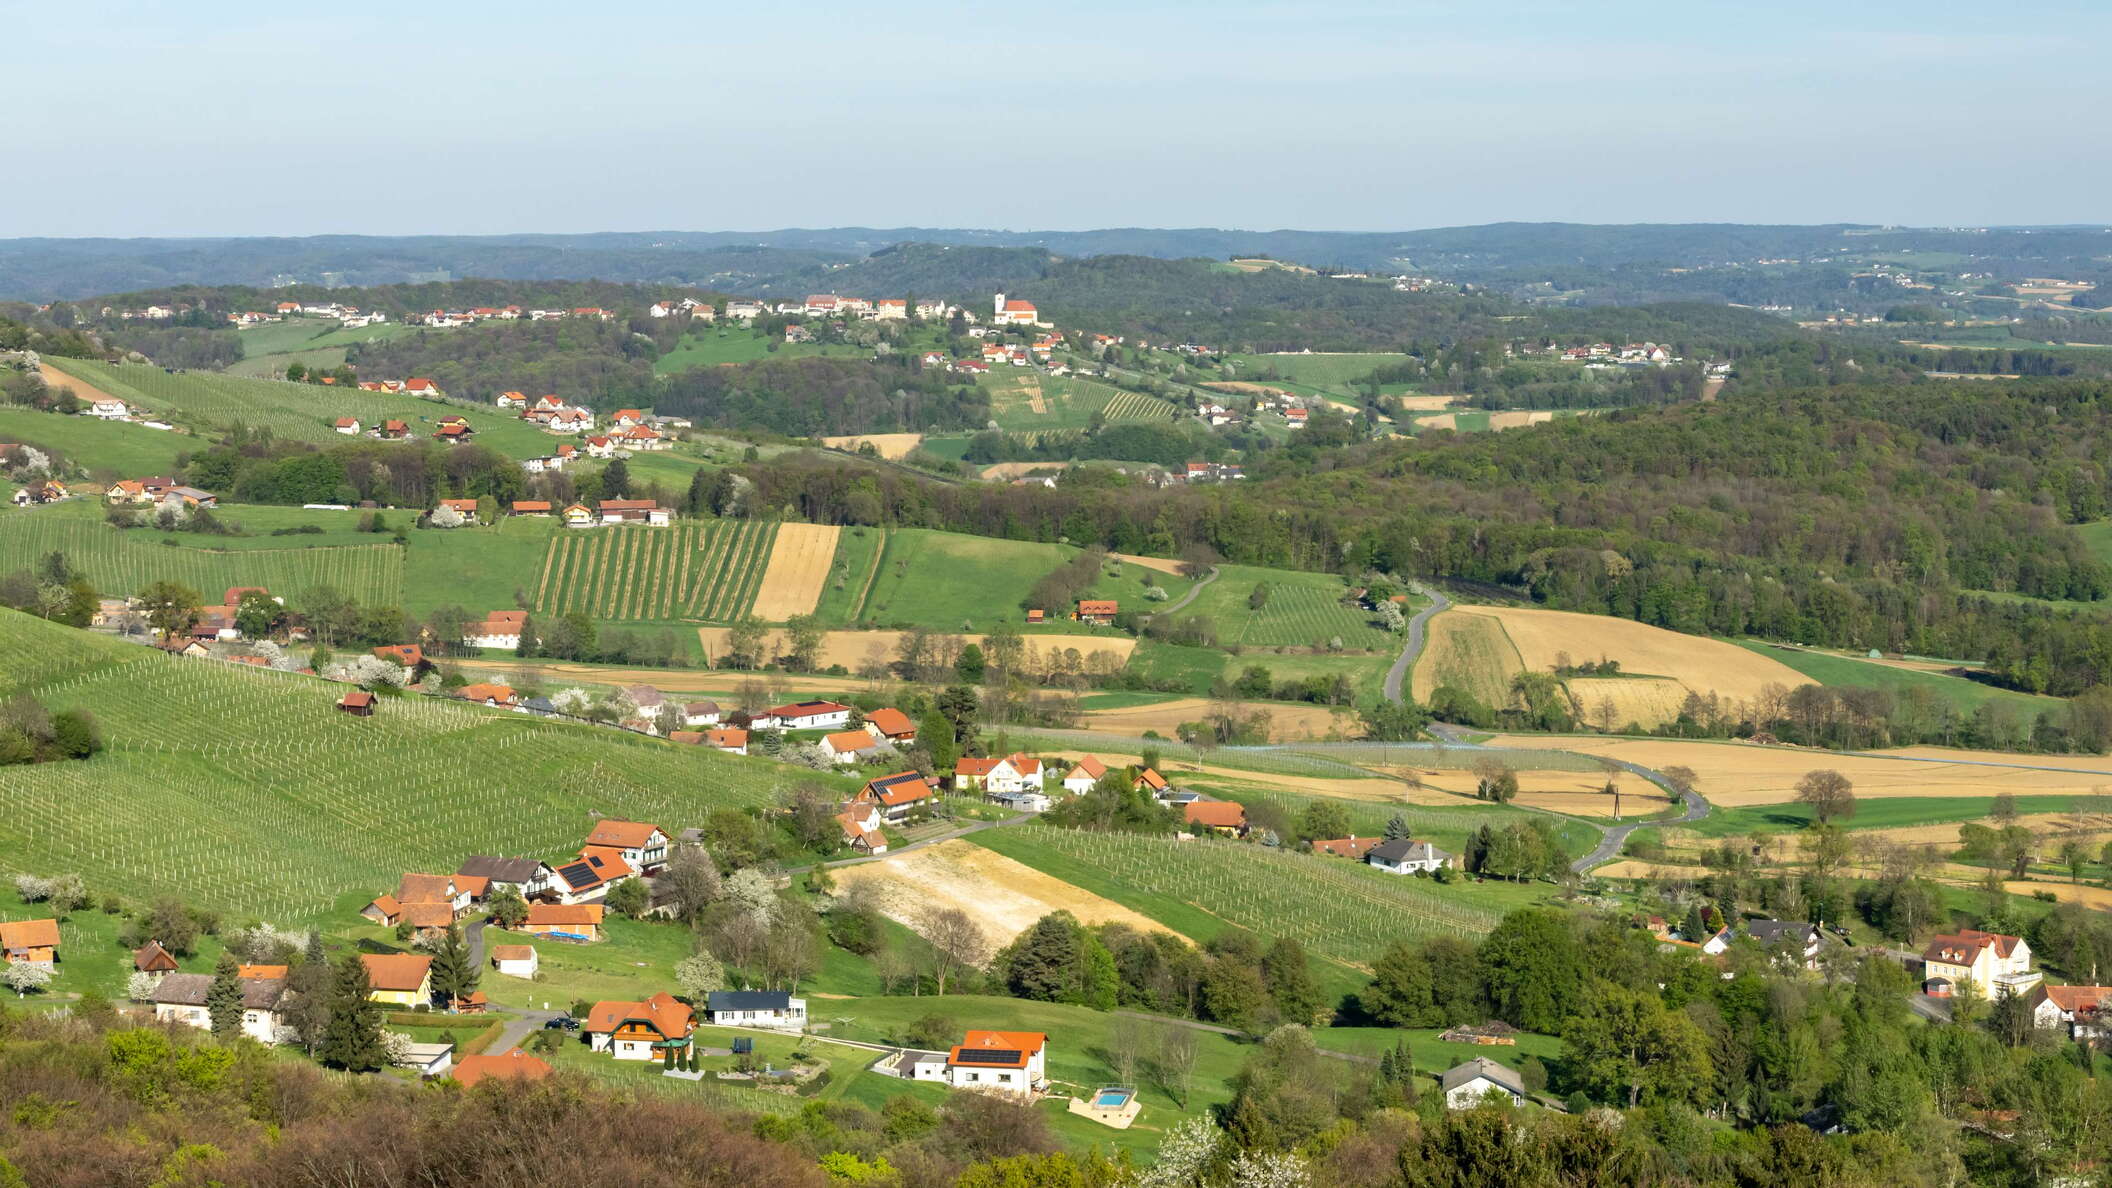 Oststeirisches Hügelland with St. Anna am Aigen